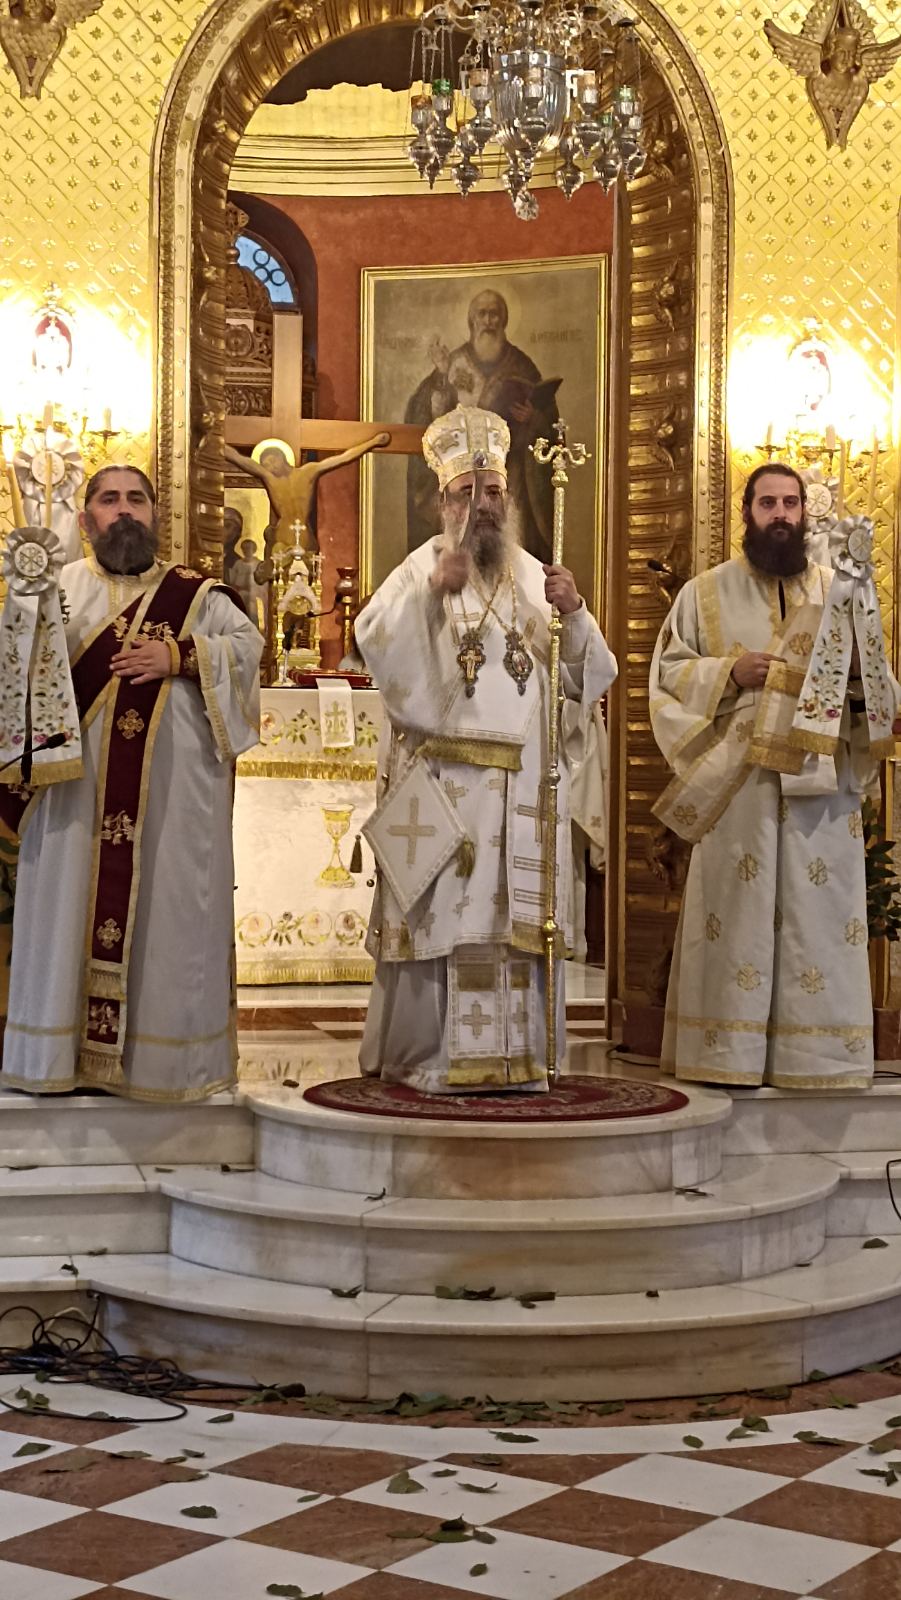 Μητροπολίτης Χρυσόστομος: Με λαμπρότητα η εορτή για την μνήμη του Οσίου Παϊσίου του Αγιορείτου στην Ιερά Μητρόπολη Πατρών - ΦΩΤΟ